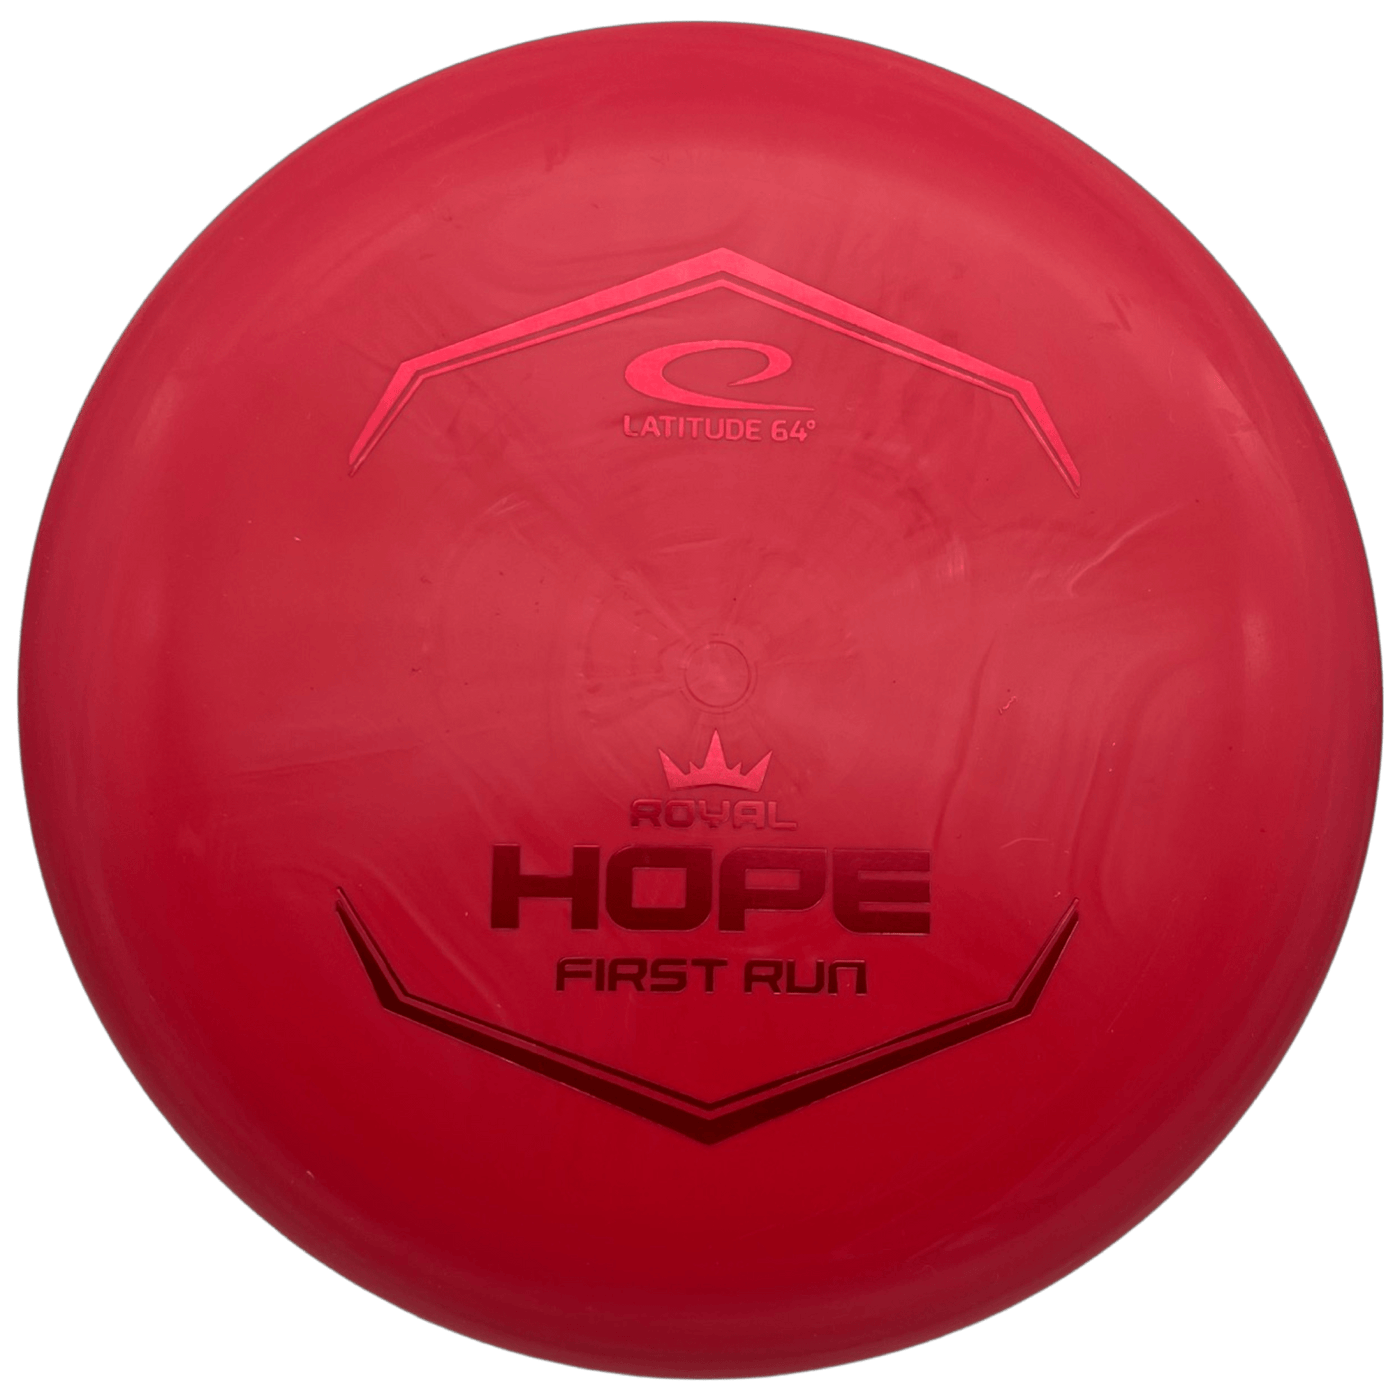 Latitude Putter Red - Red - 174g Latitude 64 Royal Sense Hope (First Run)